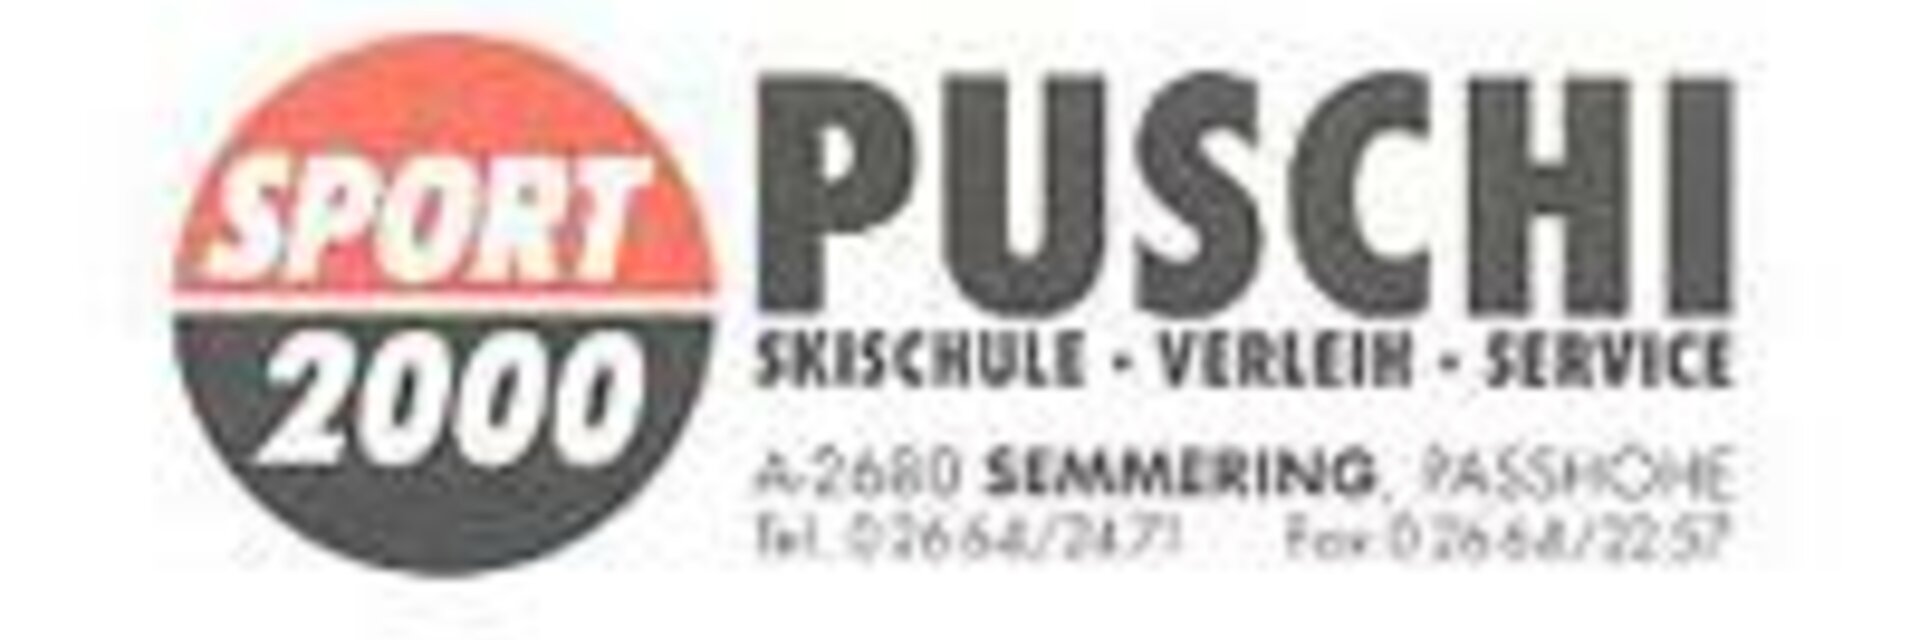 Sport Puschi - Impression #1 | © Puschi